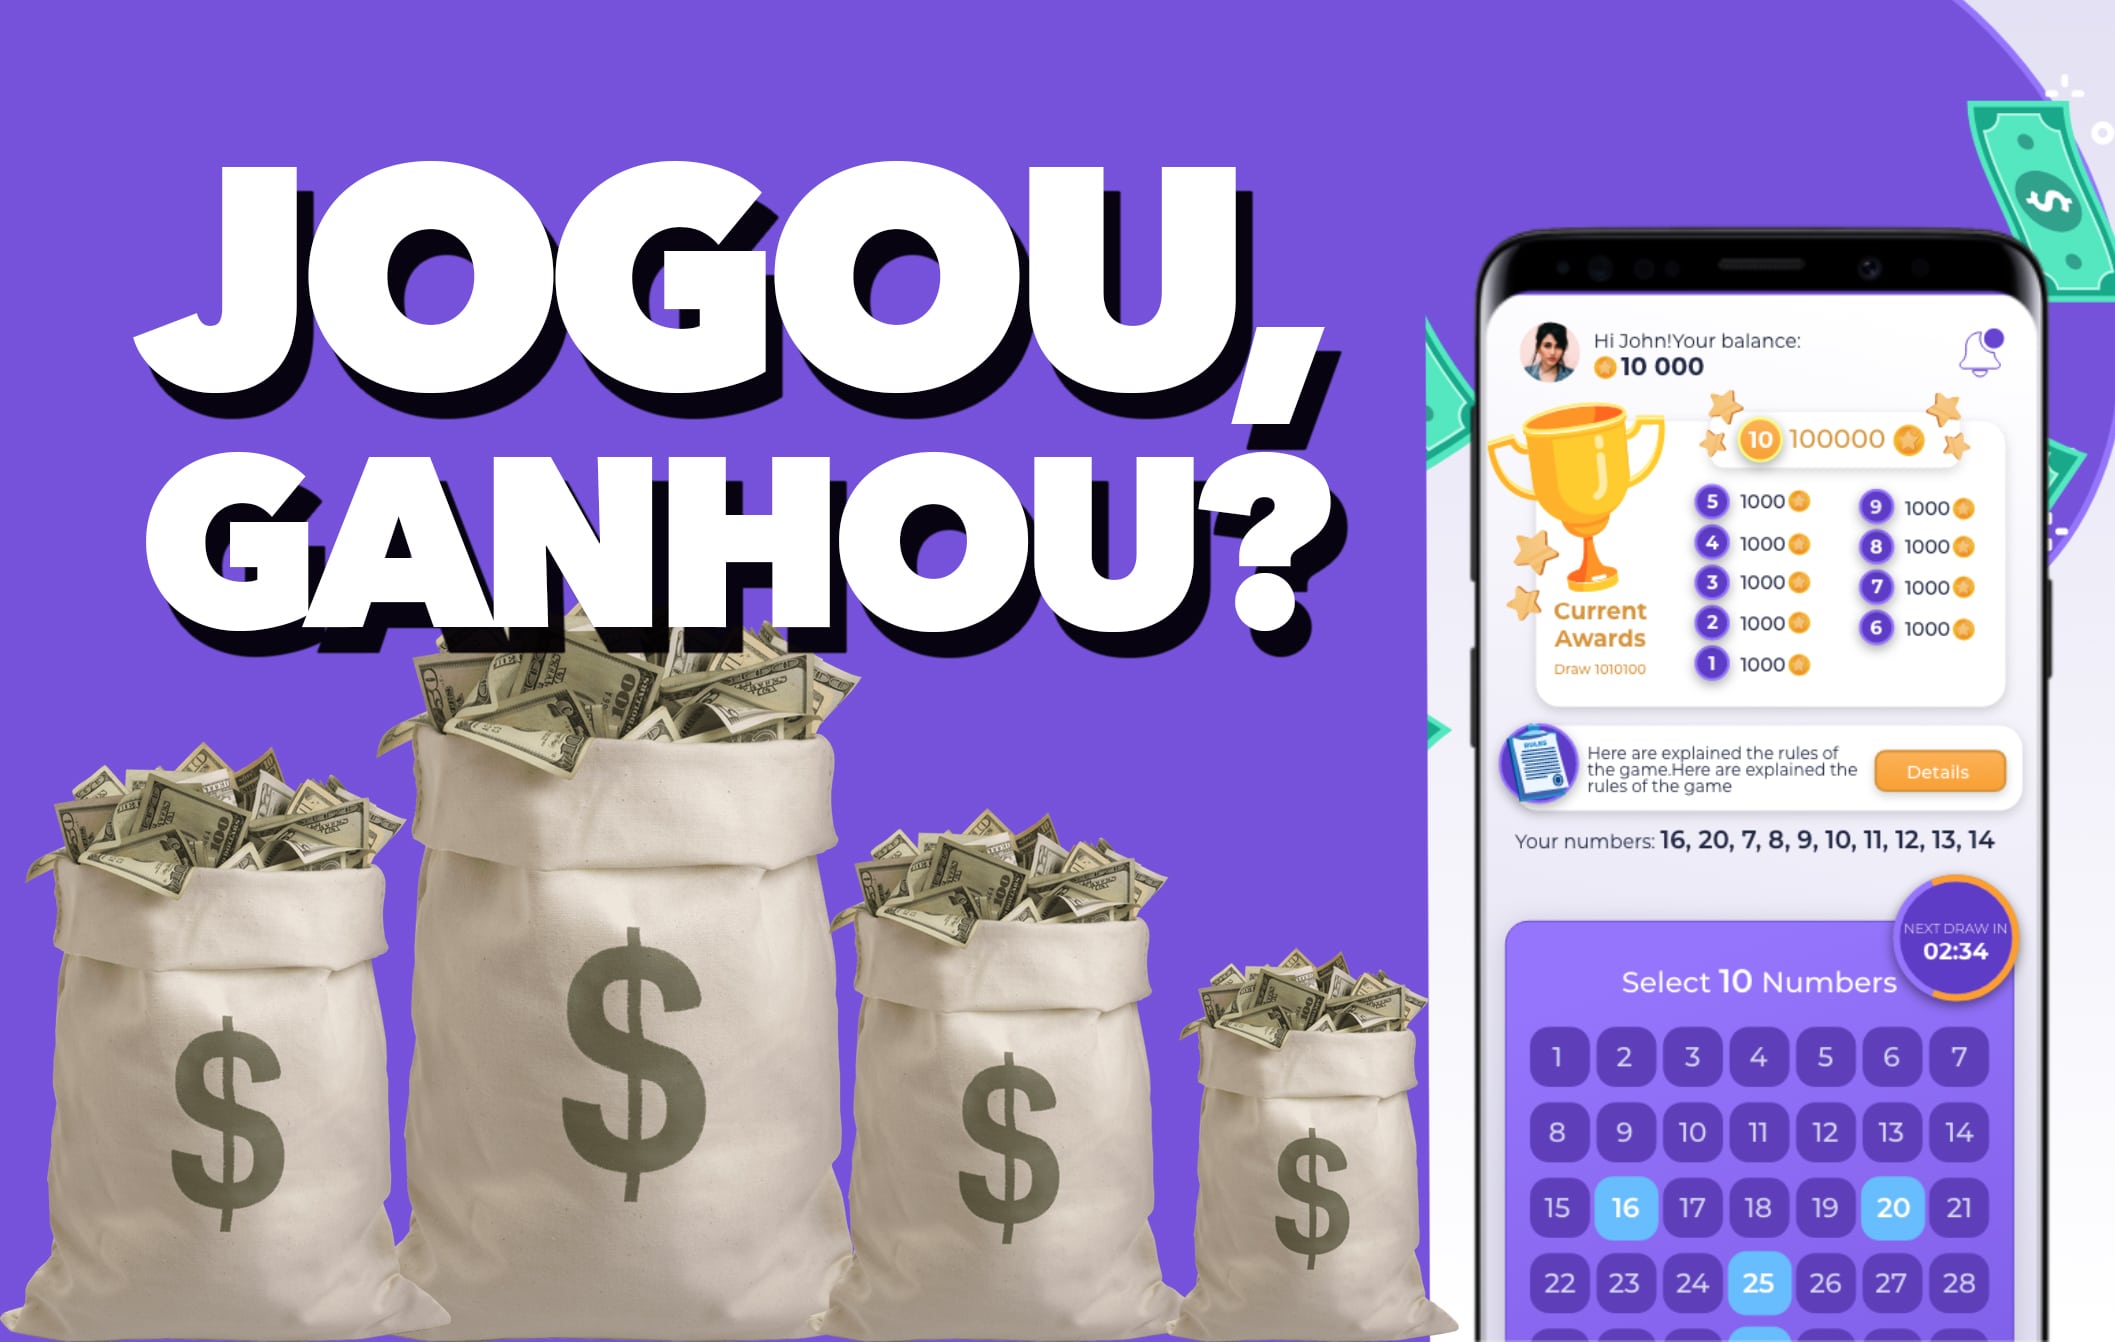 App de game promete pagar dinheiro de VERDADE via Pix, mas será que é  confiável?